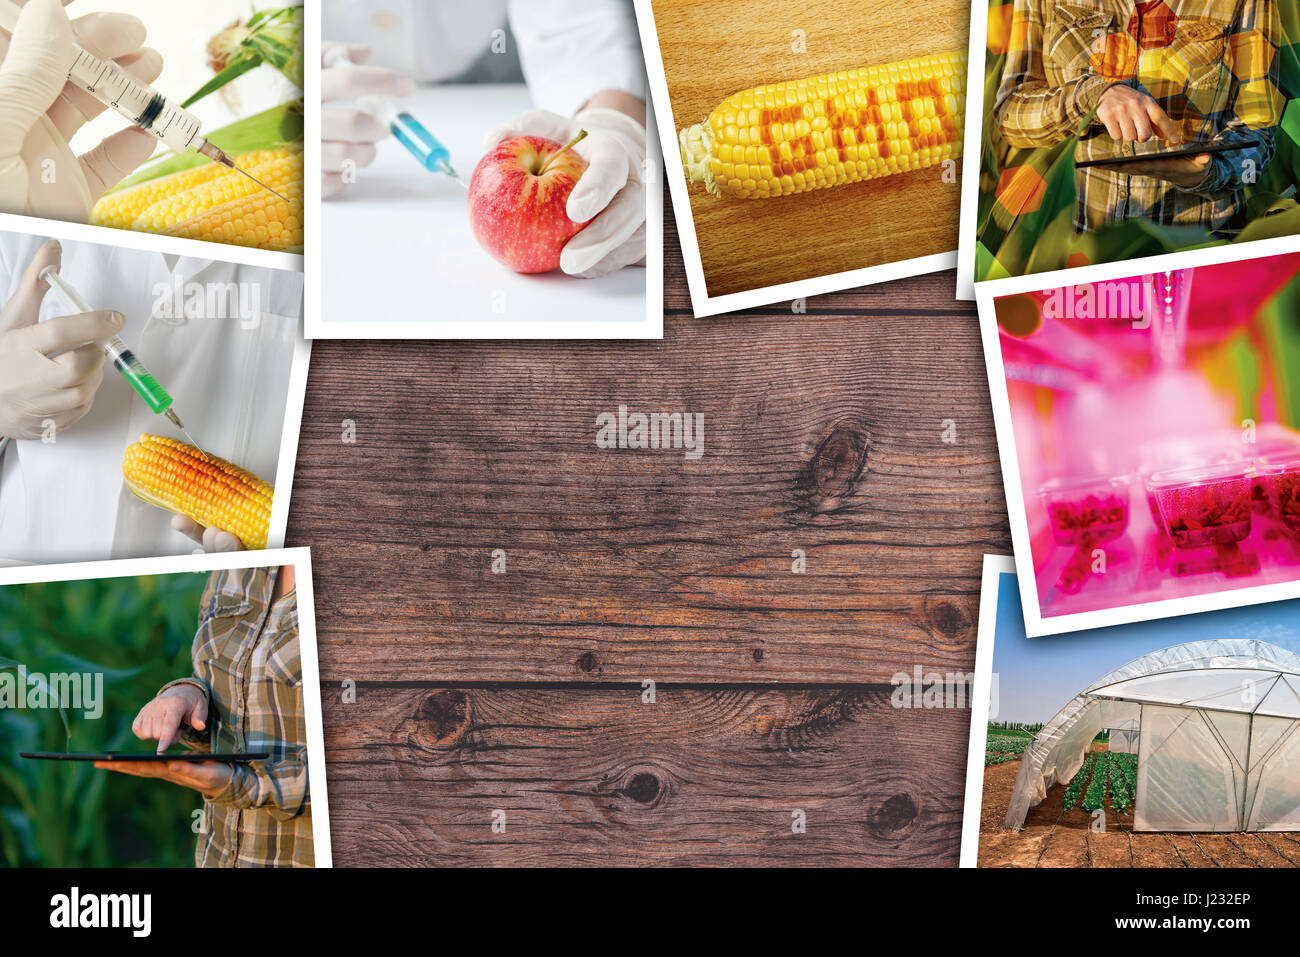 La modificazione genetica, la scienza e la tecnologia in agricoltura, photo collage su sfondo di legno come spazio di copia Foto Stock